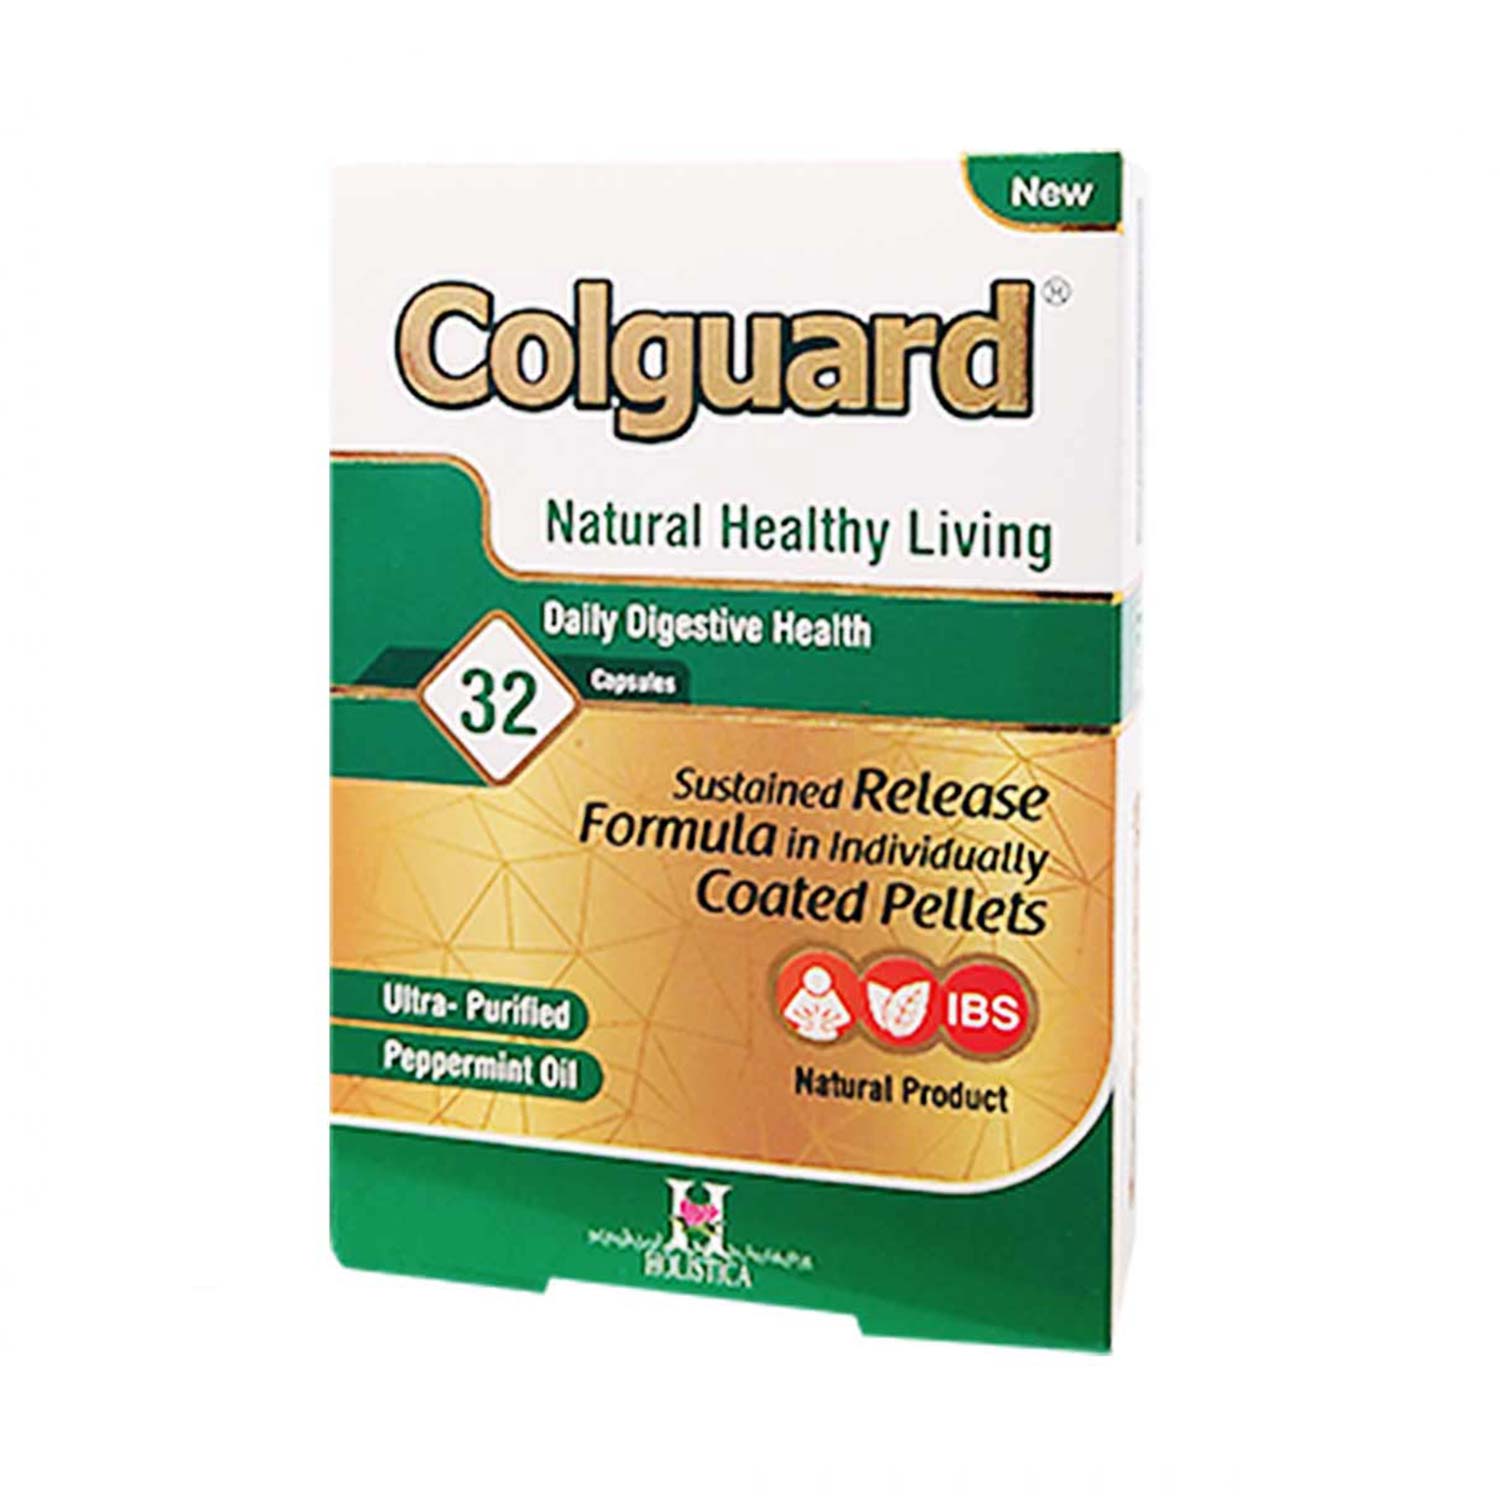 کپسول ضد نفخ و دردهای شکمی کلگارد (Colguard)